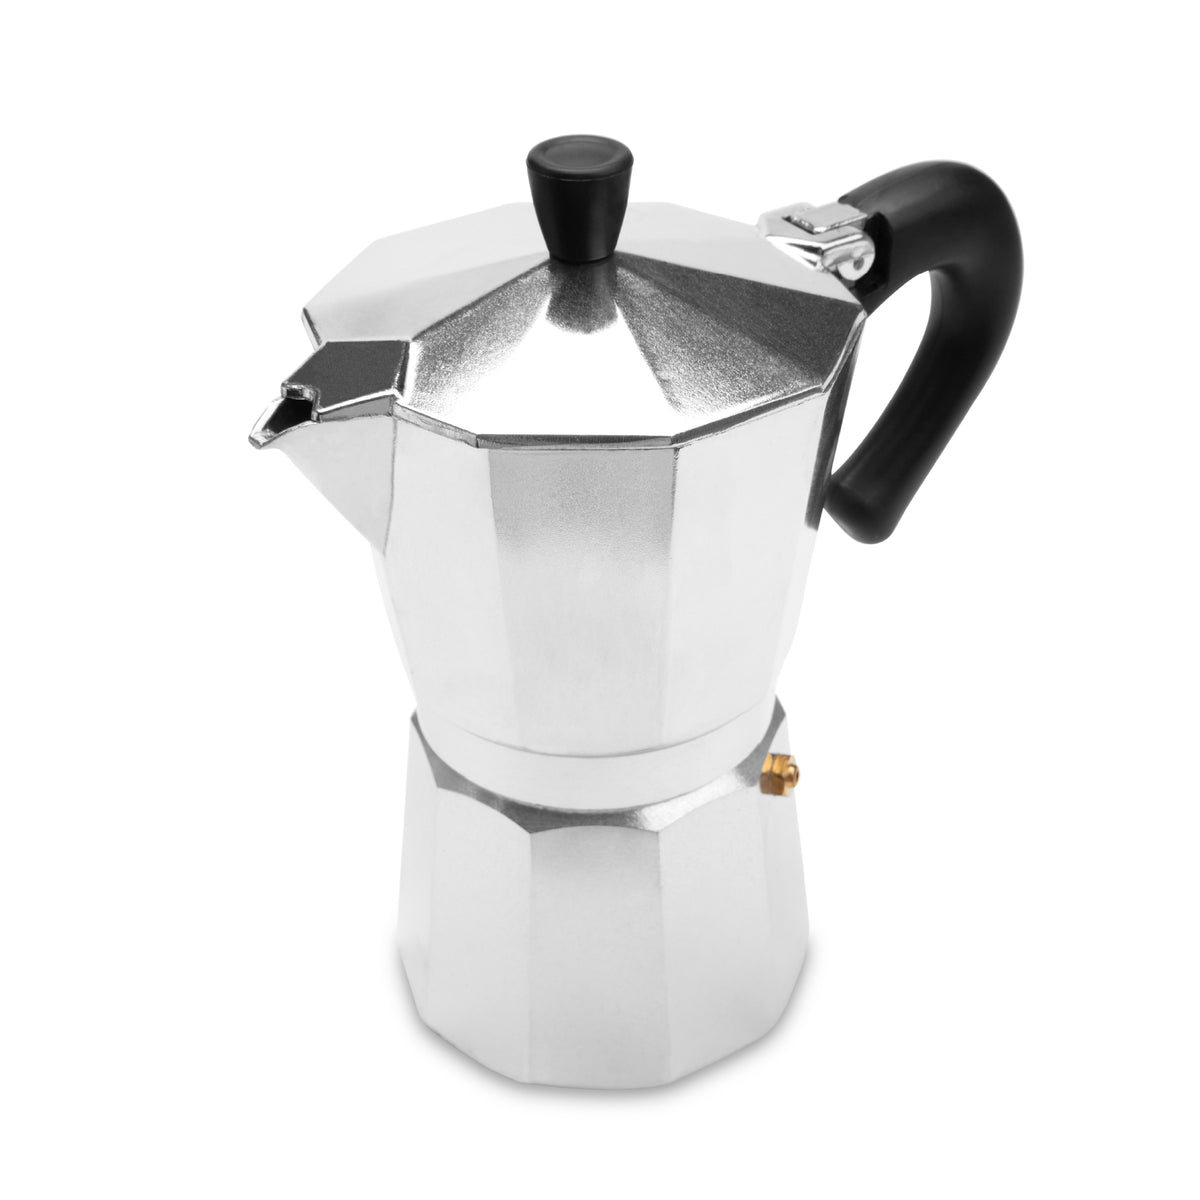 EspressoWorks Moka Pot 6 Cup Stovetop Espresso Maker